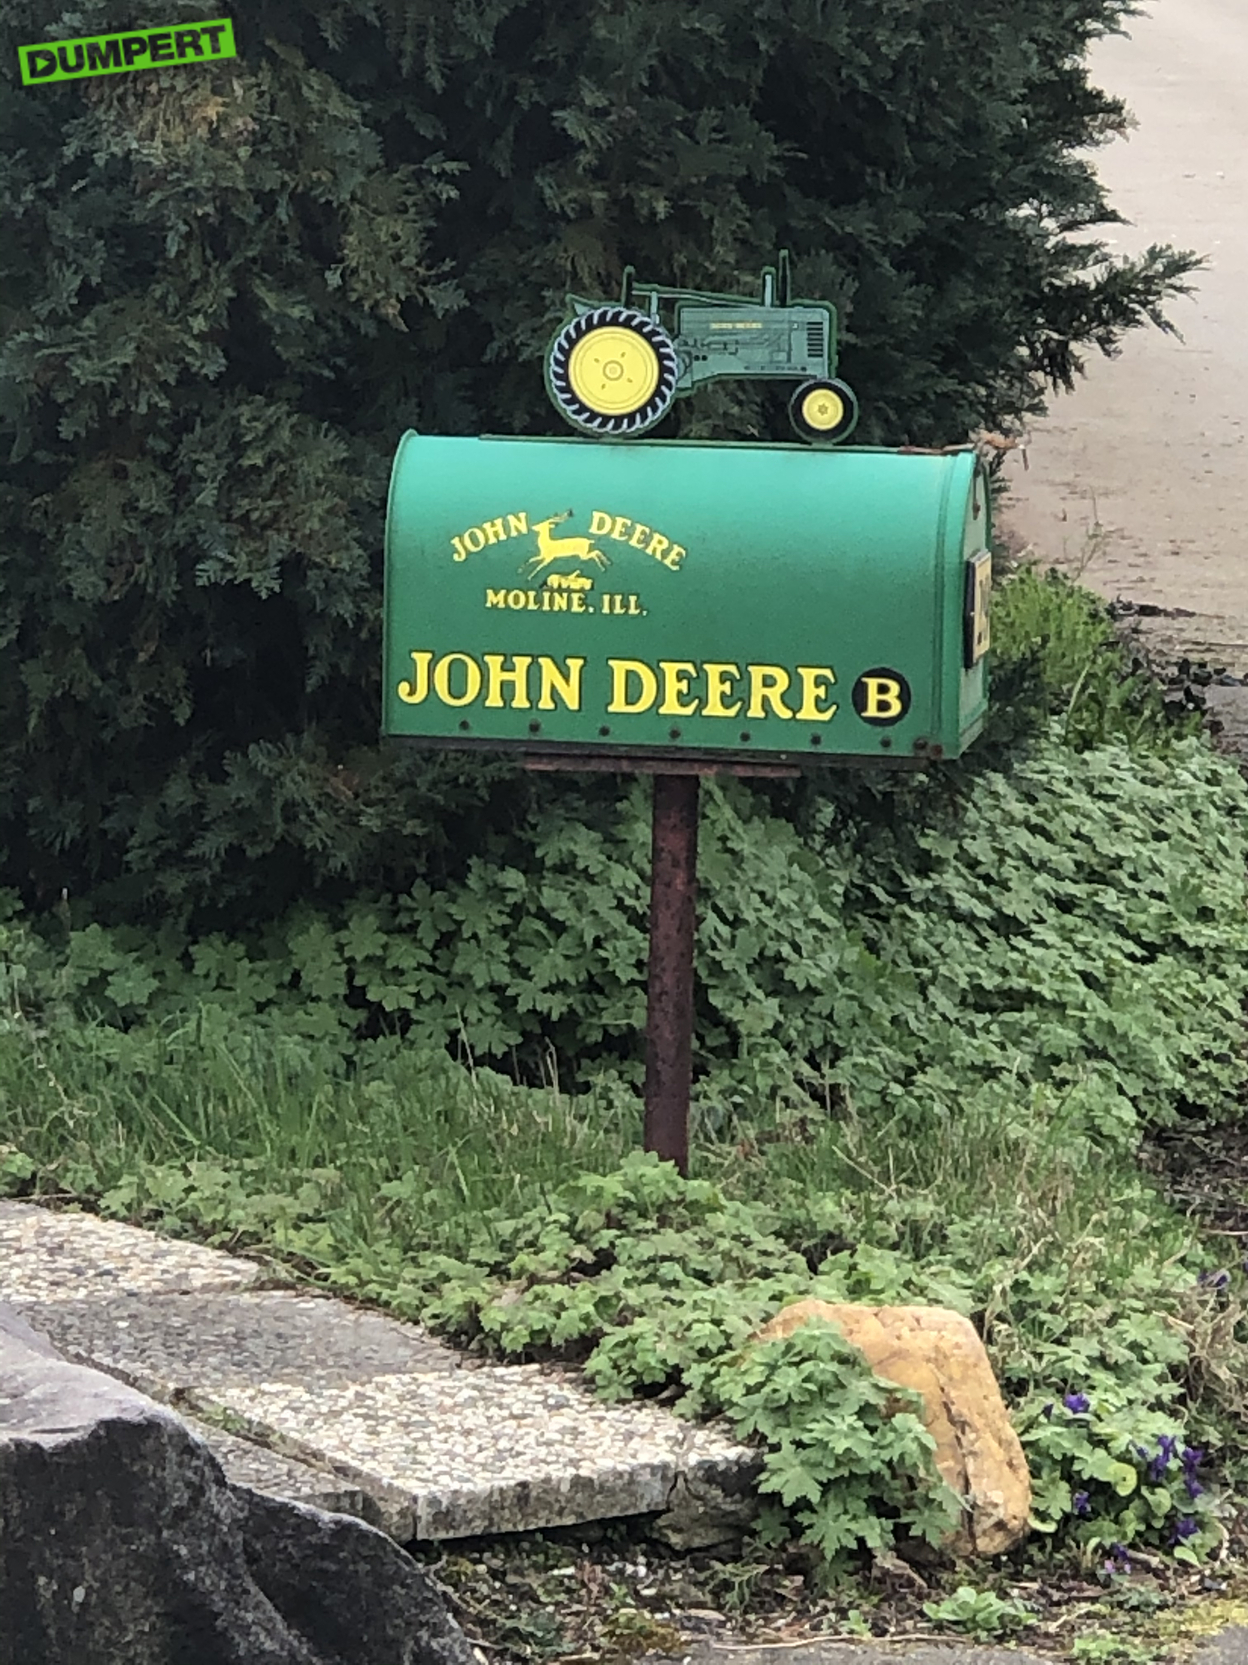 John Deere fan